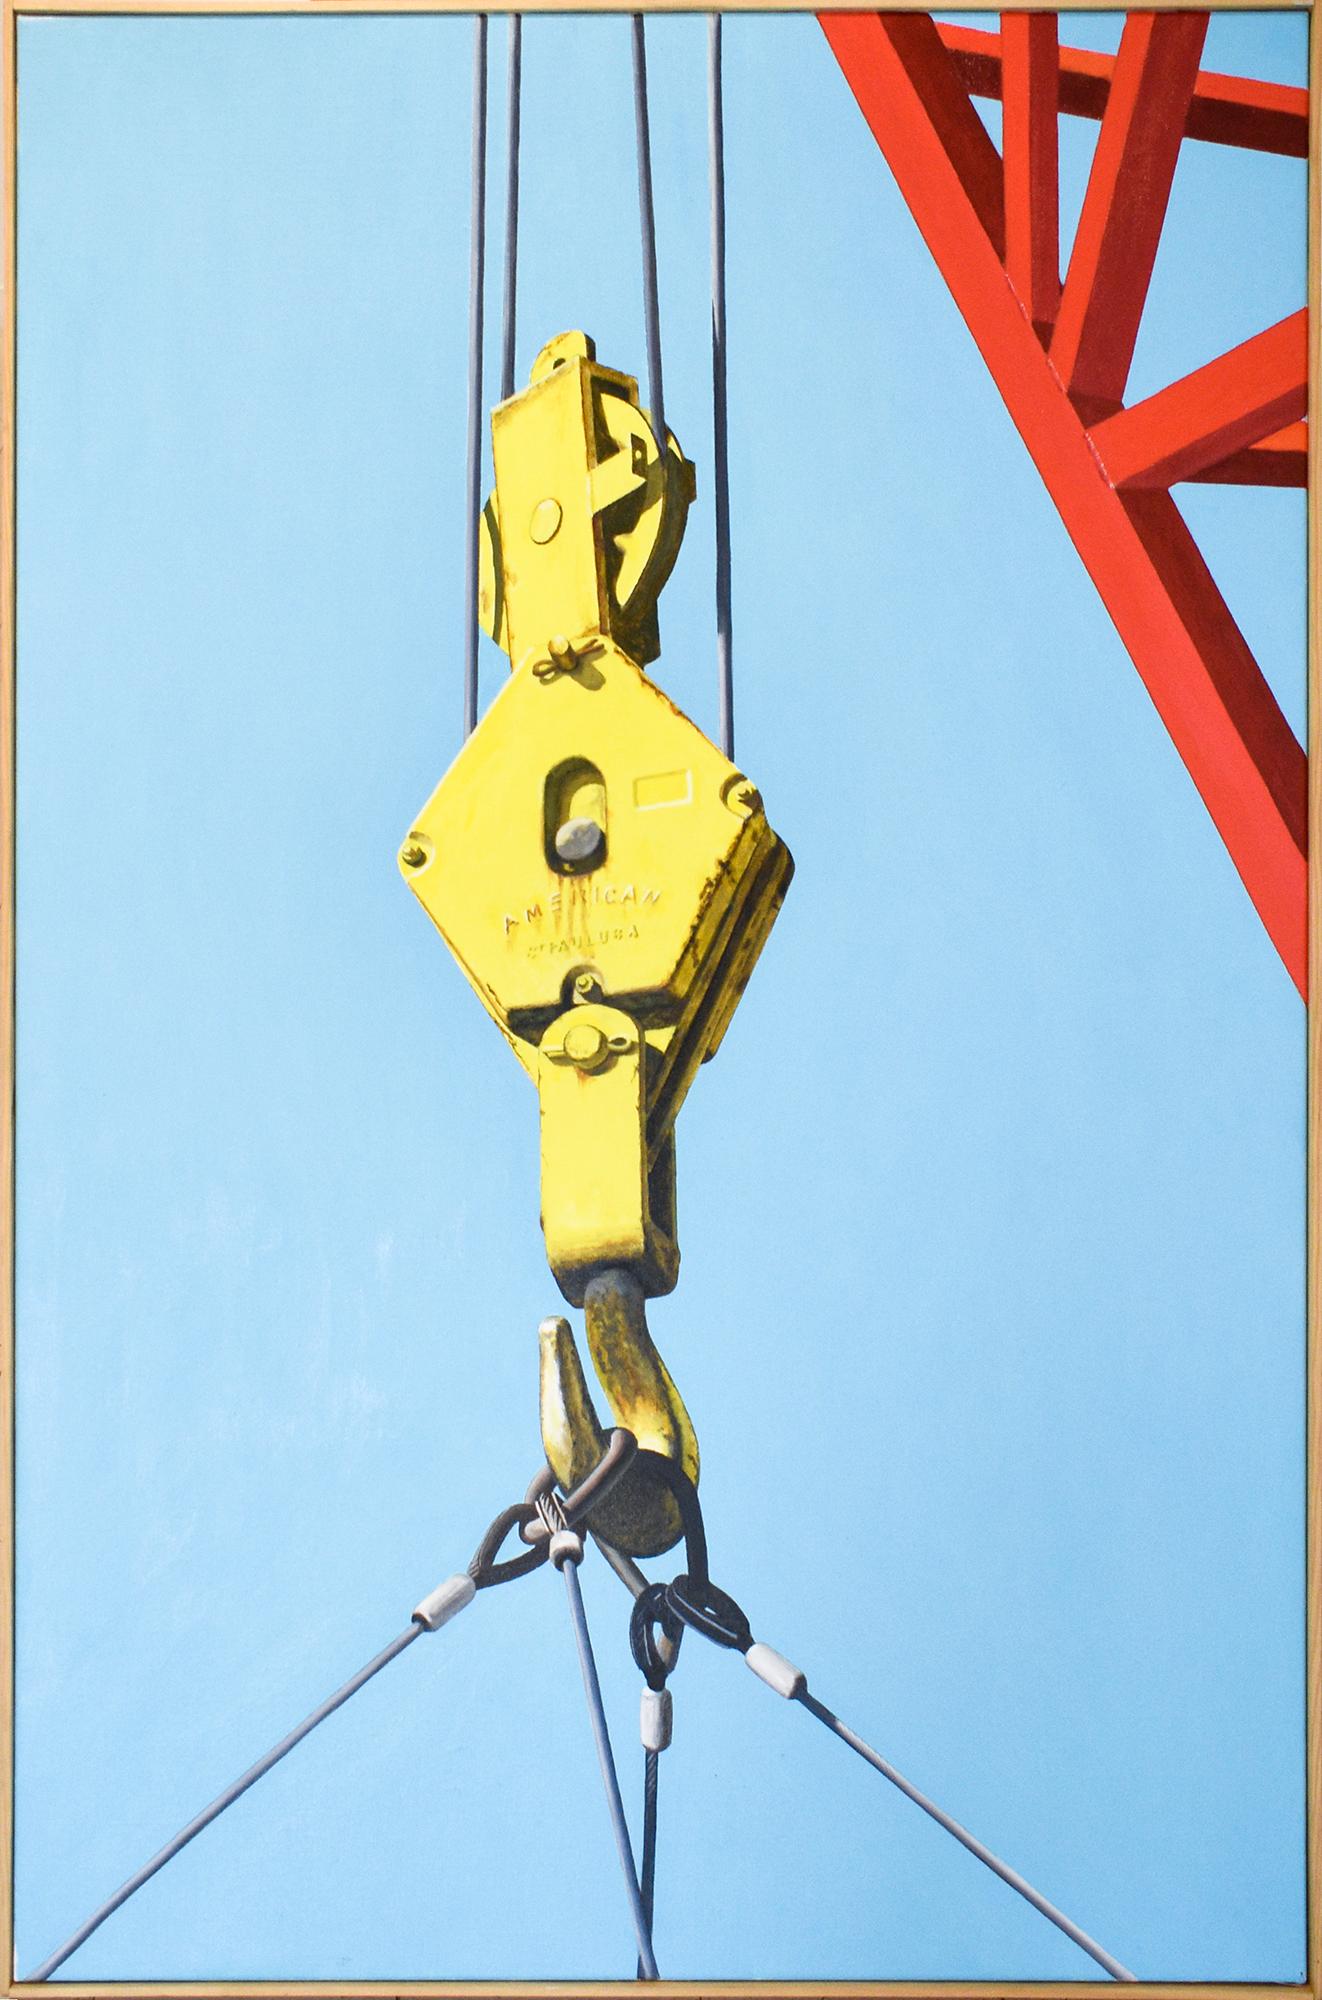 Boatyard Lift (peinture à l'huile photoréaliste d'une grue rouge et jaune sur bleu) - Painting de Joseph E. Richards